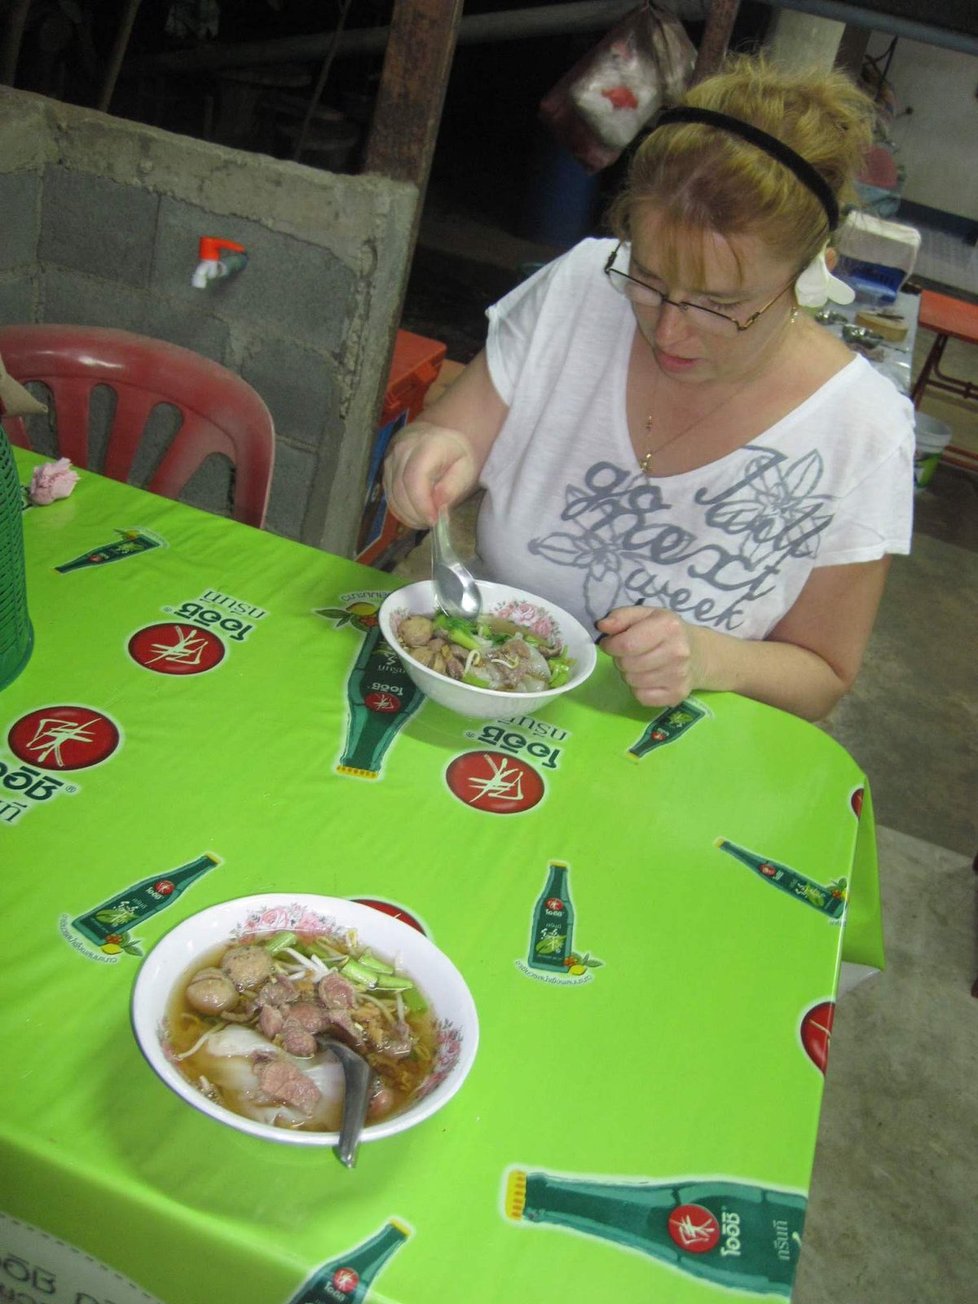 První thajská polévka. Vynecháváme turistické podniky a chodíme tam, kde jedí místní.